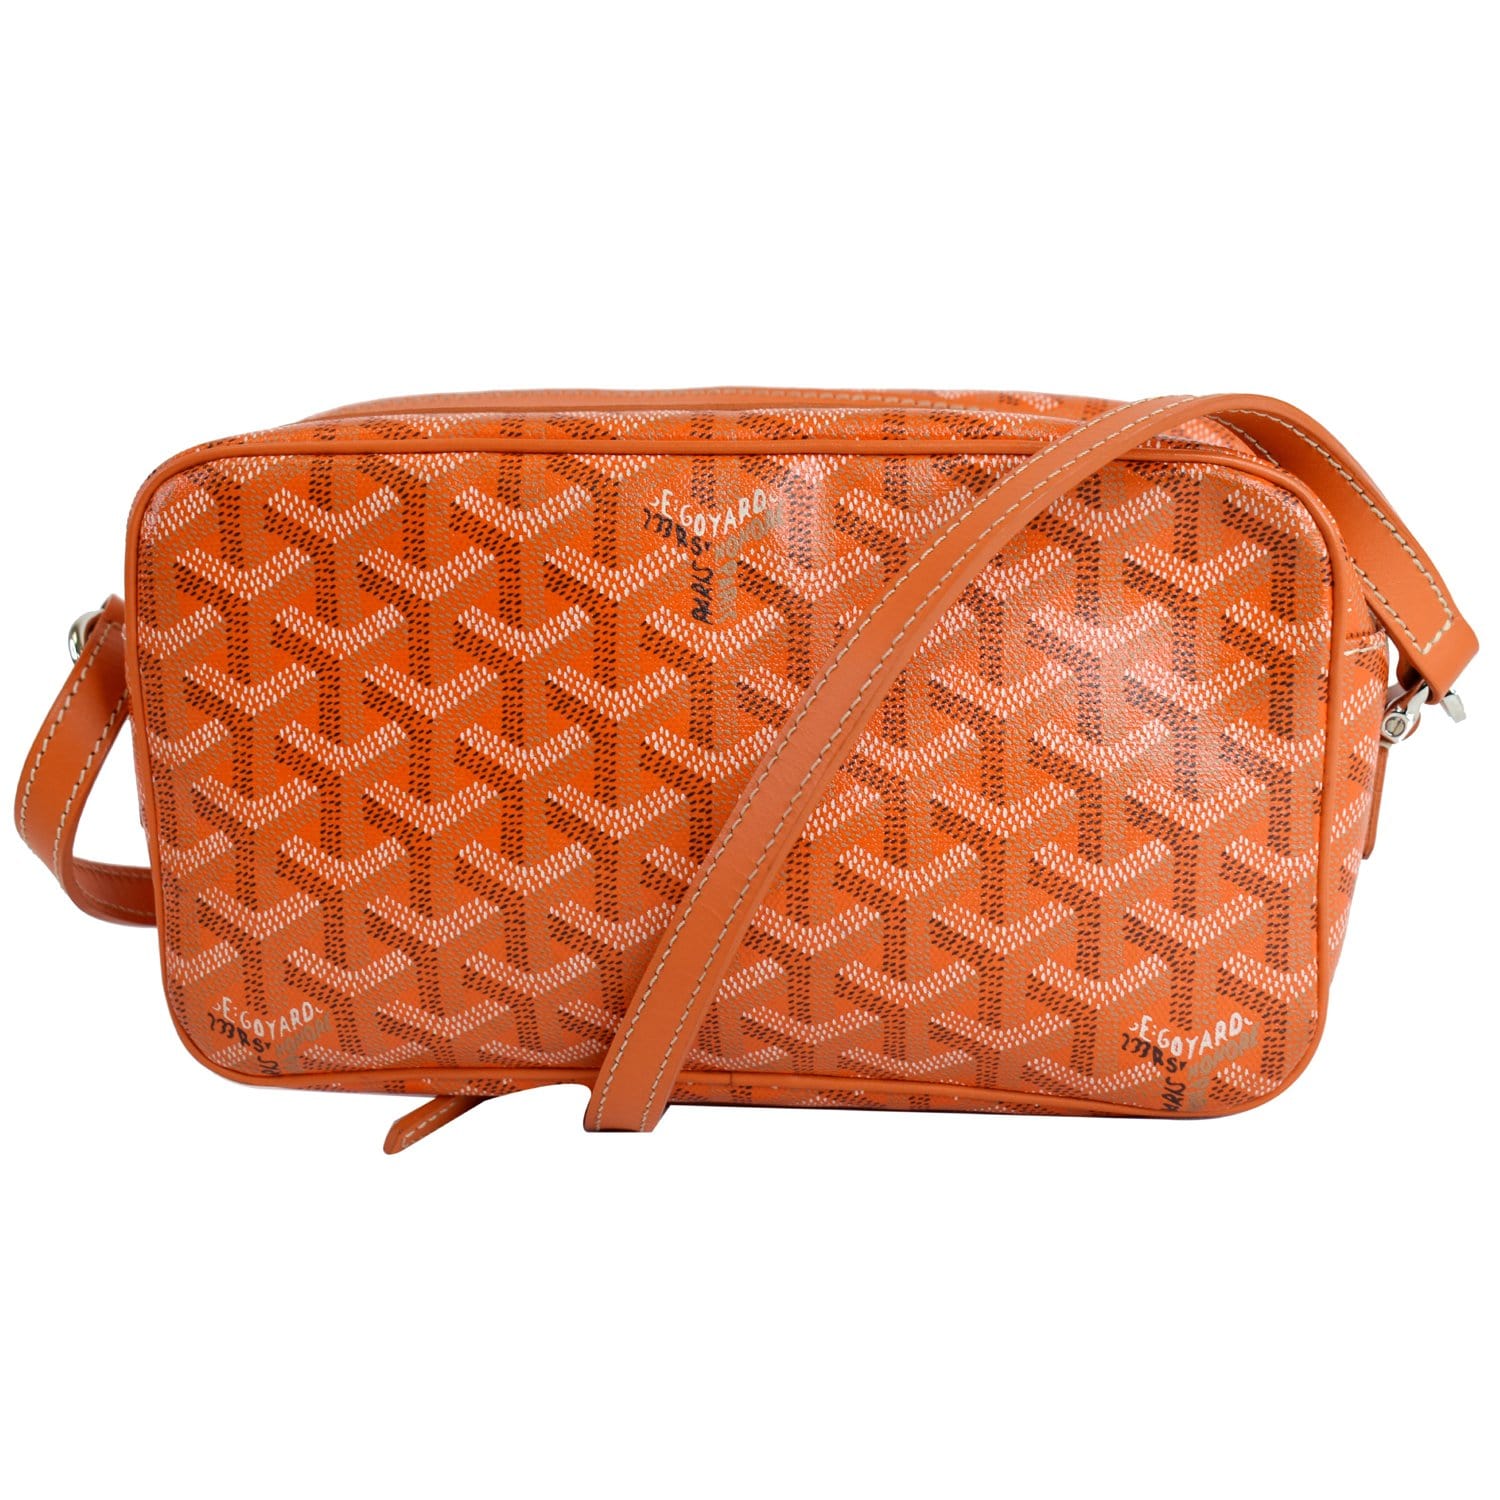 Goyard Cap vert cloth handbag - ShopStyle Shoulder Bags